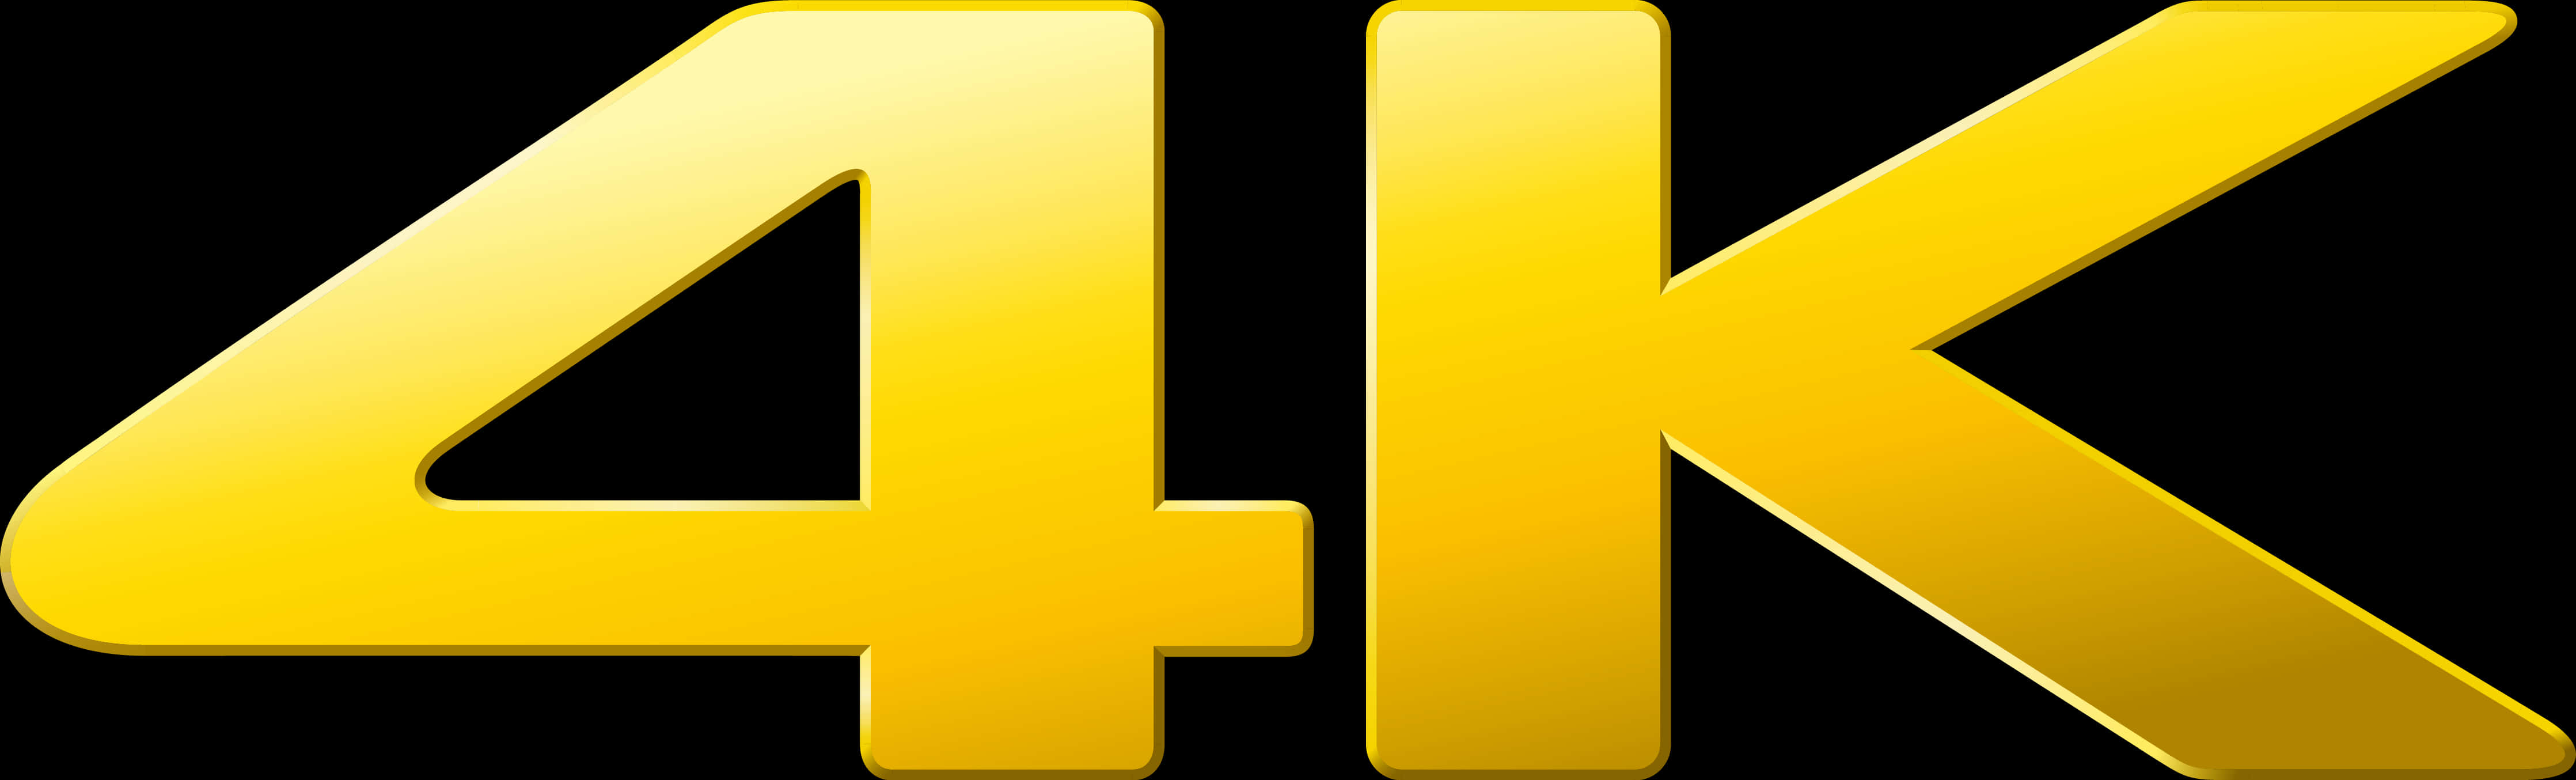 Golden4 K Logo PNG image